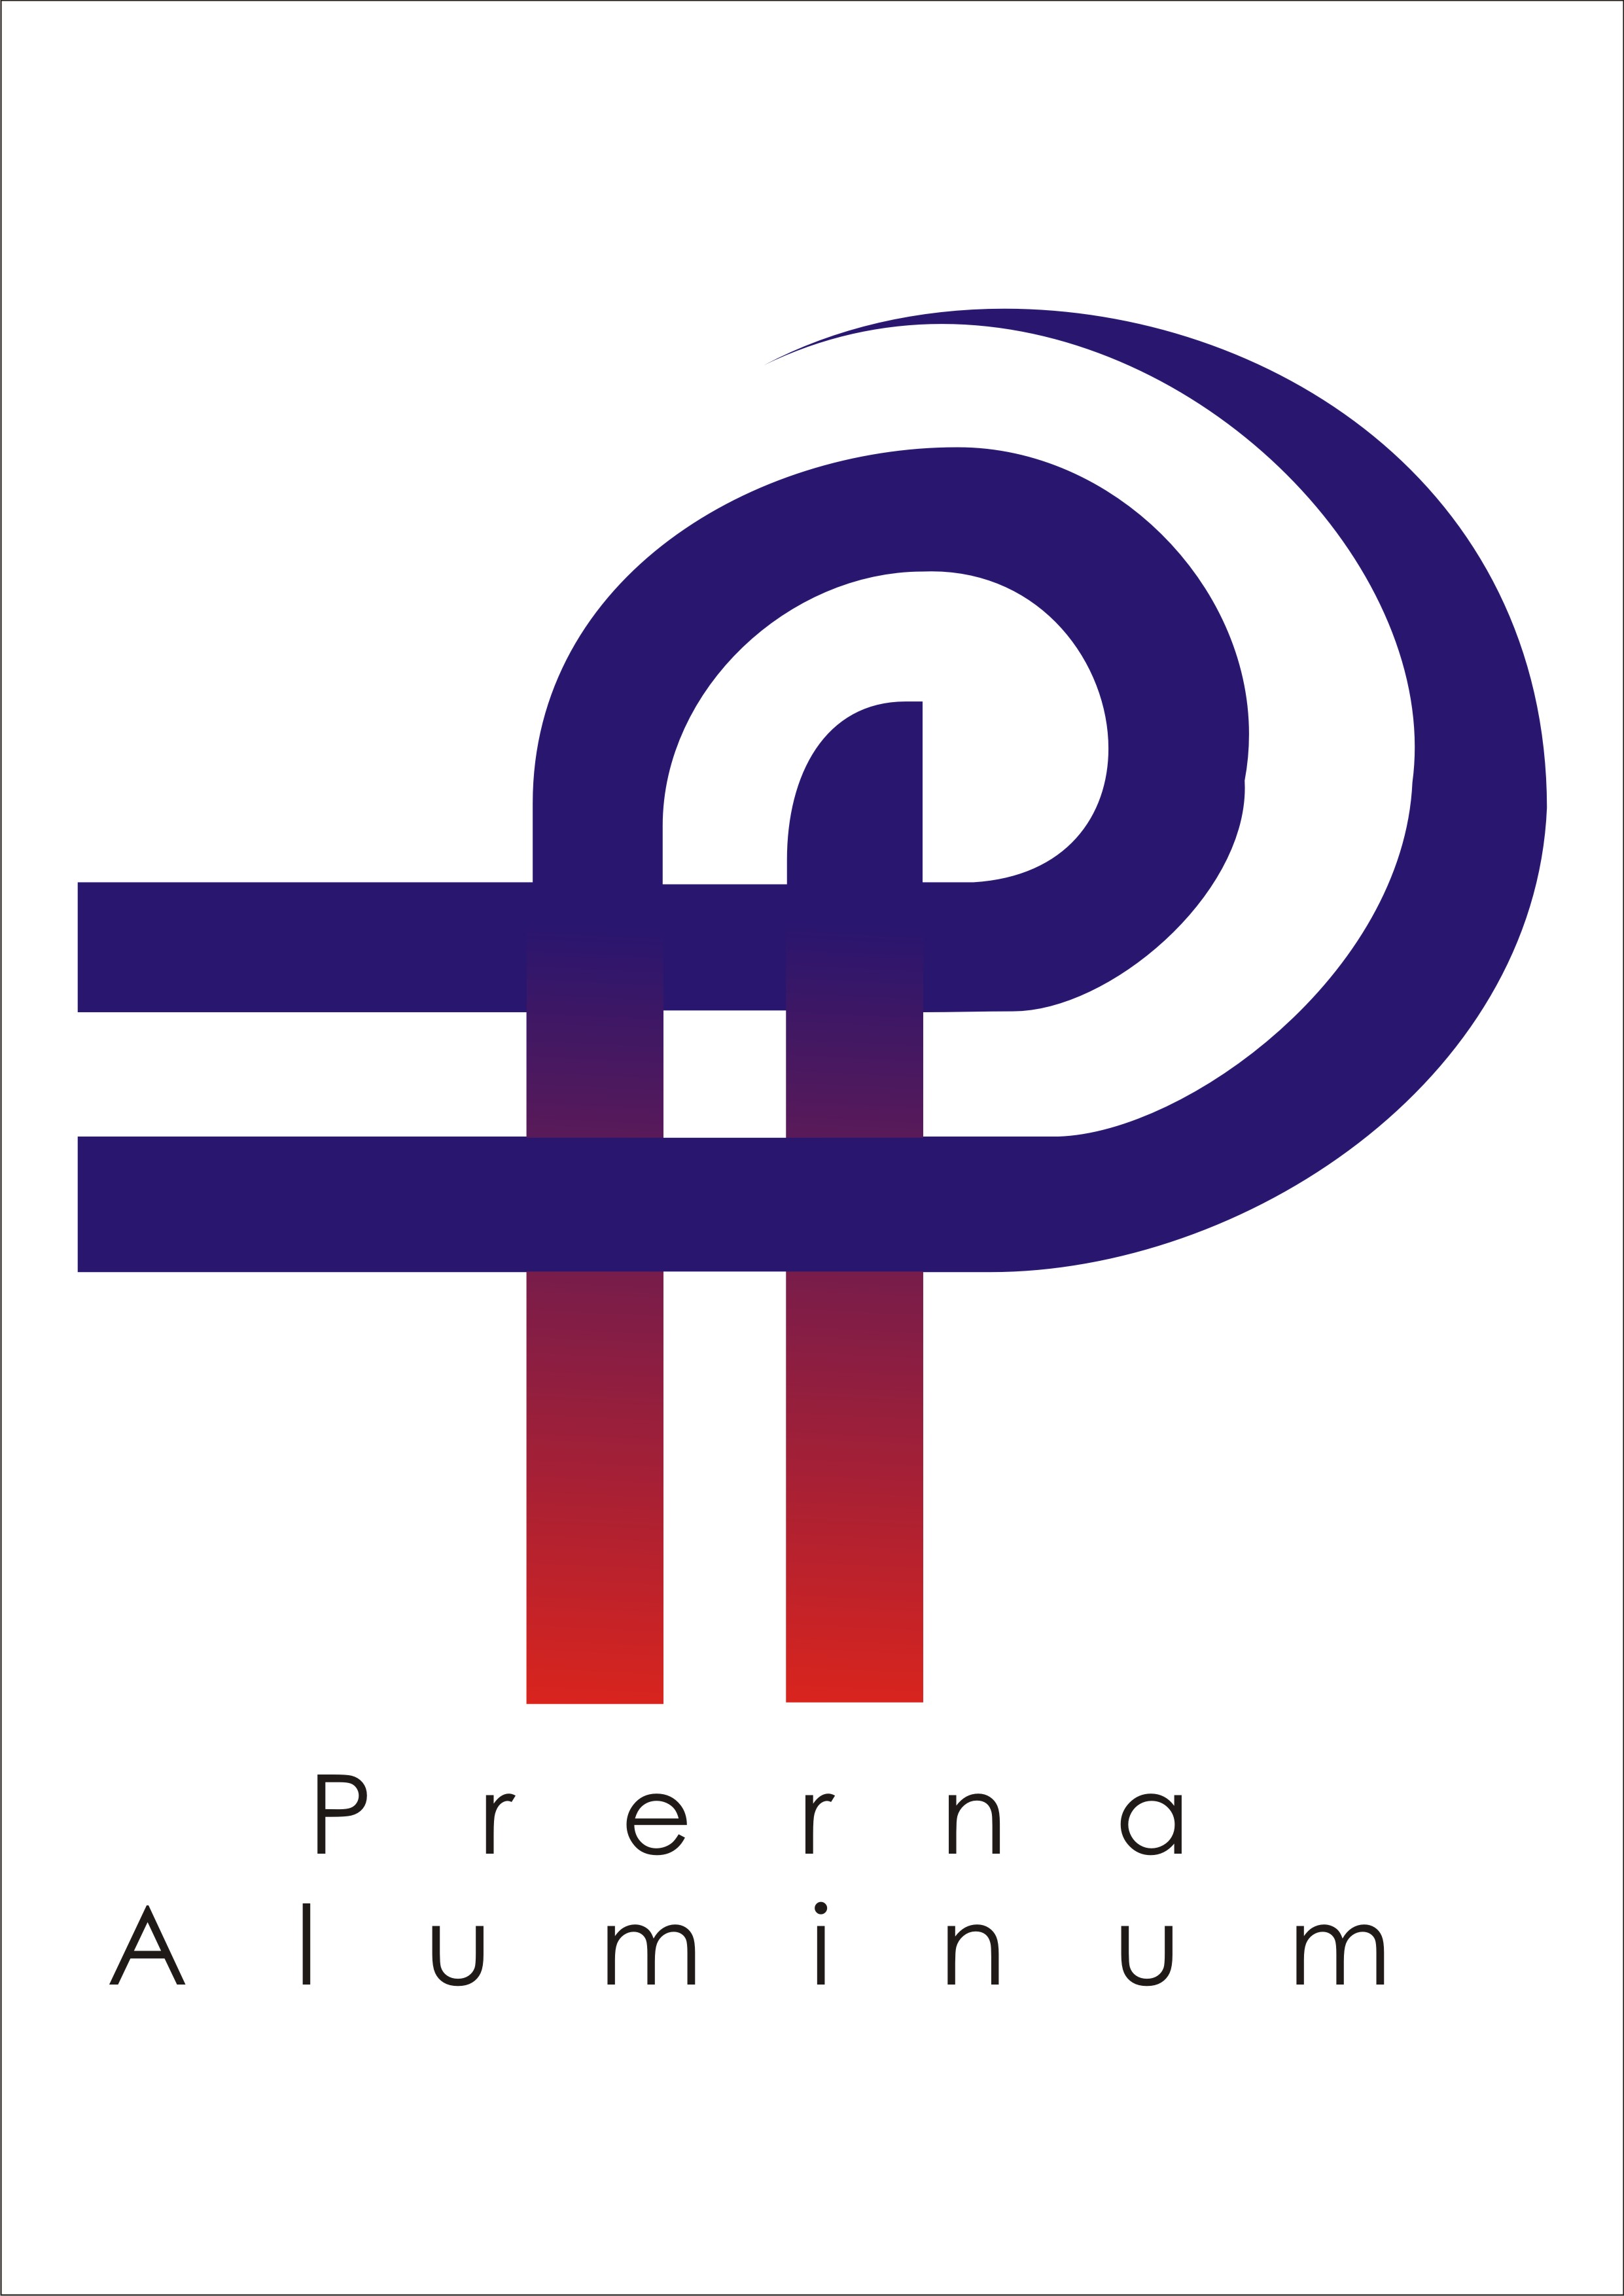 Prerna Aluminium Pvt. Ltd.